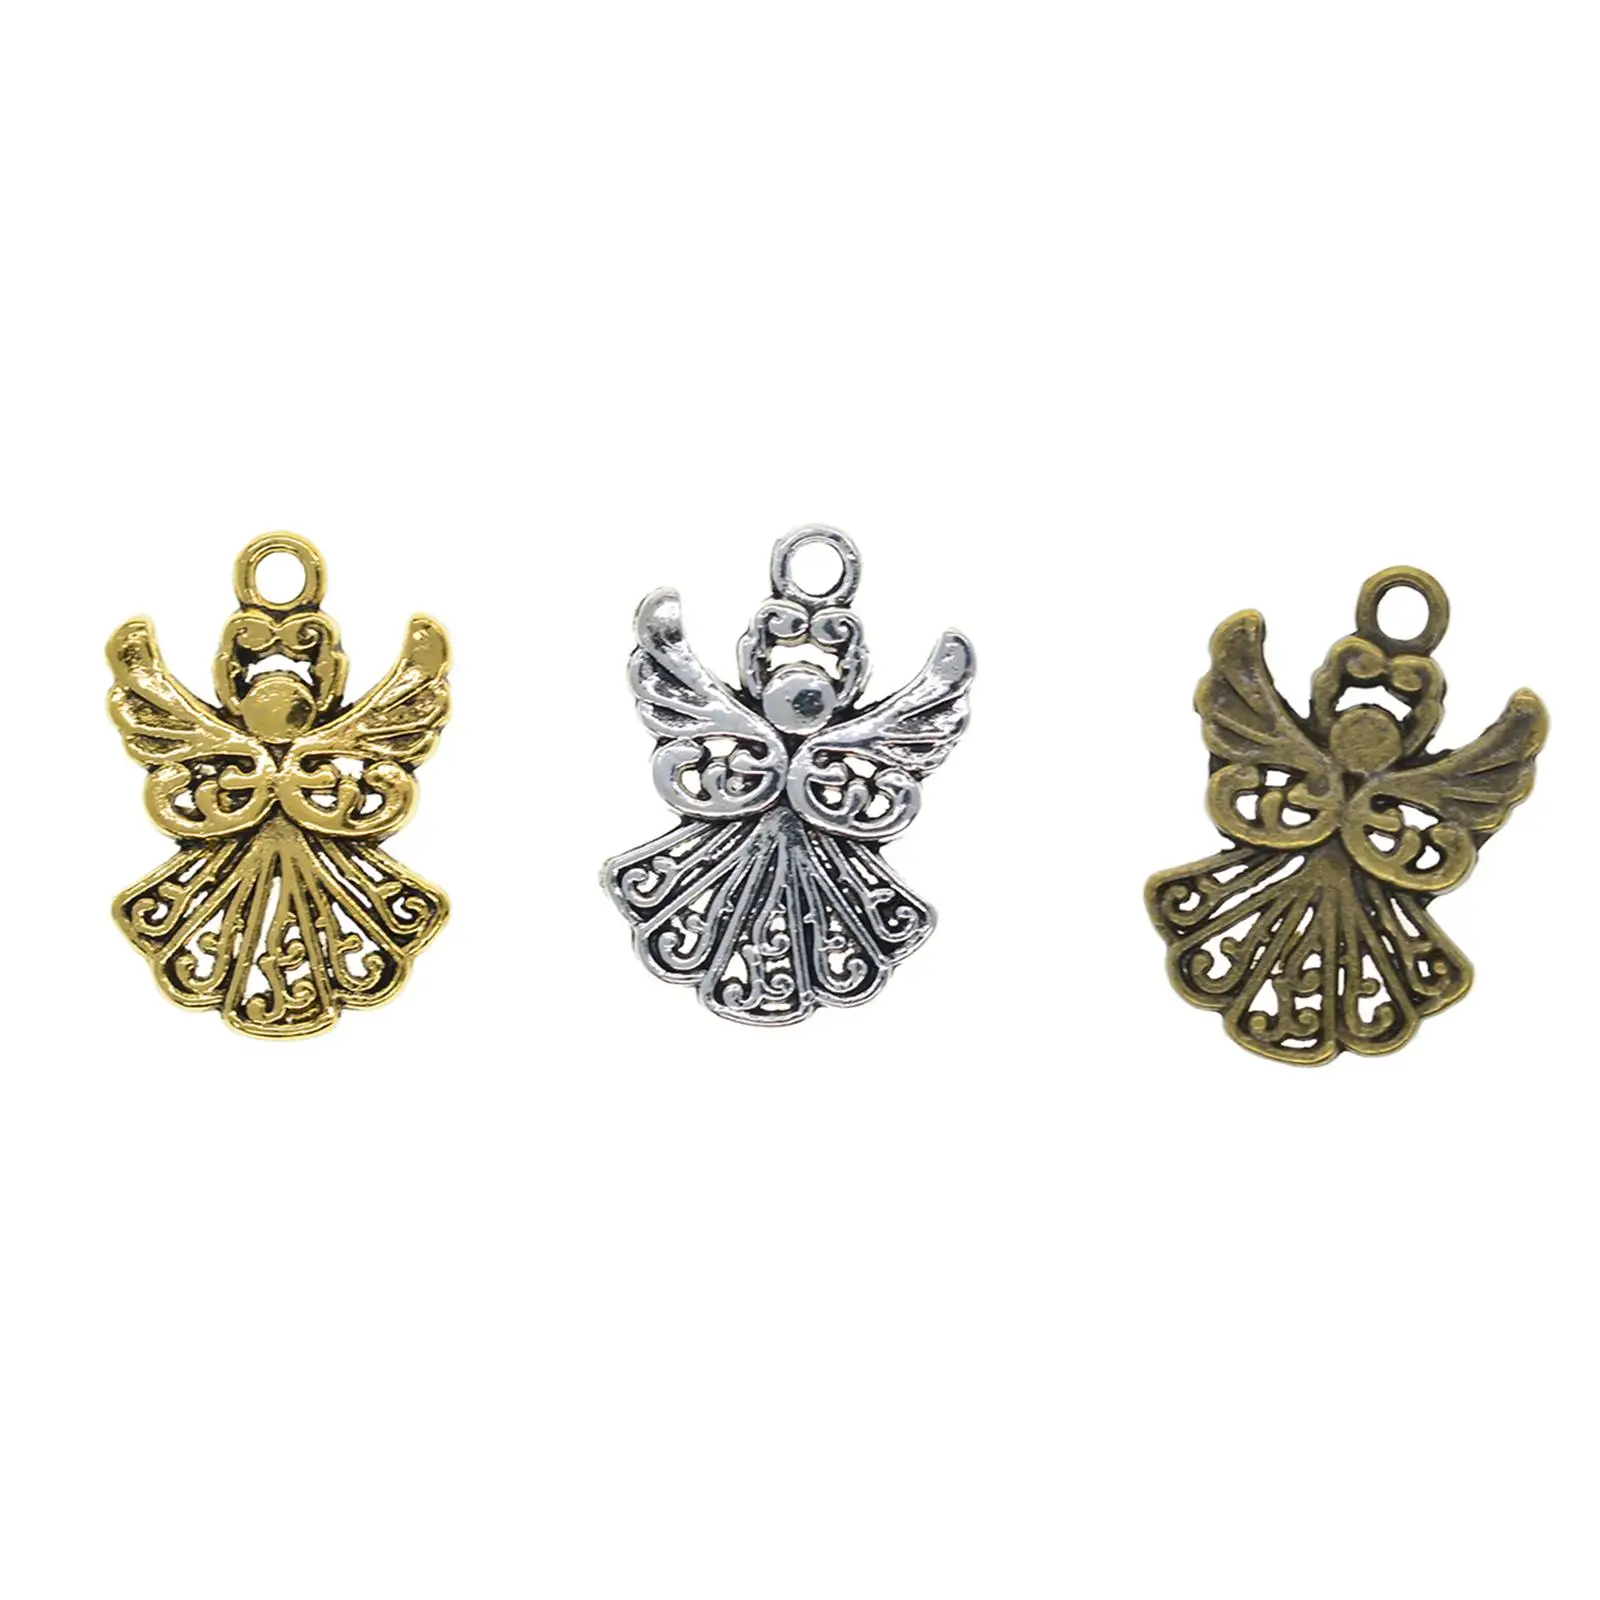 120x Metal Angel Charms Pendants DIY for Earring Bracelets Jewelry Making